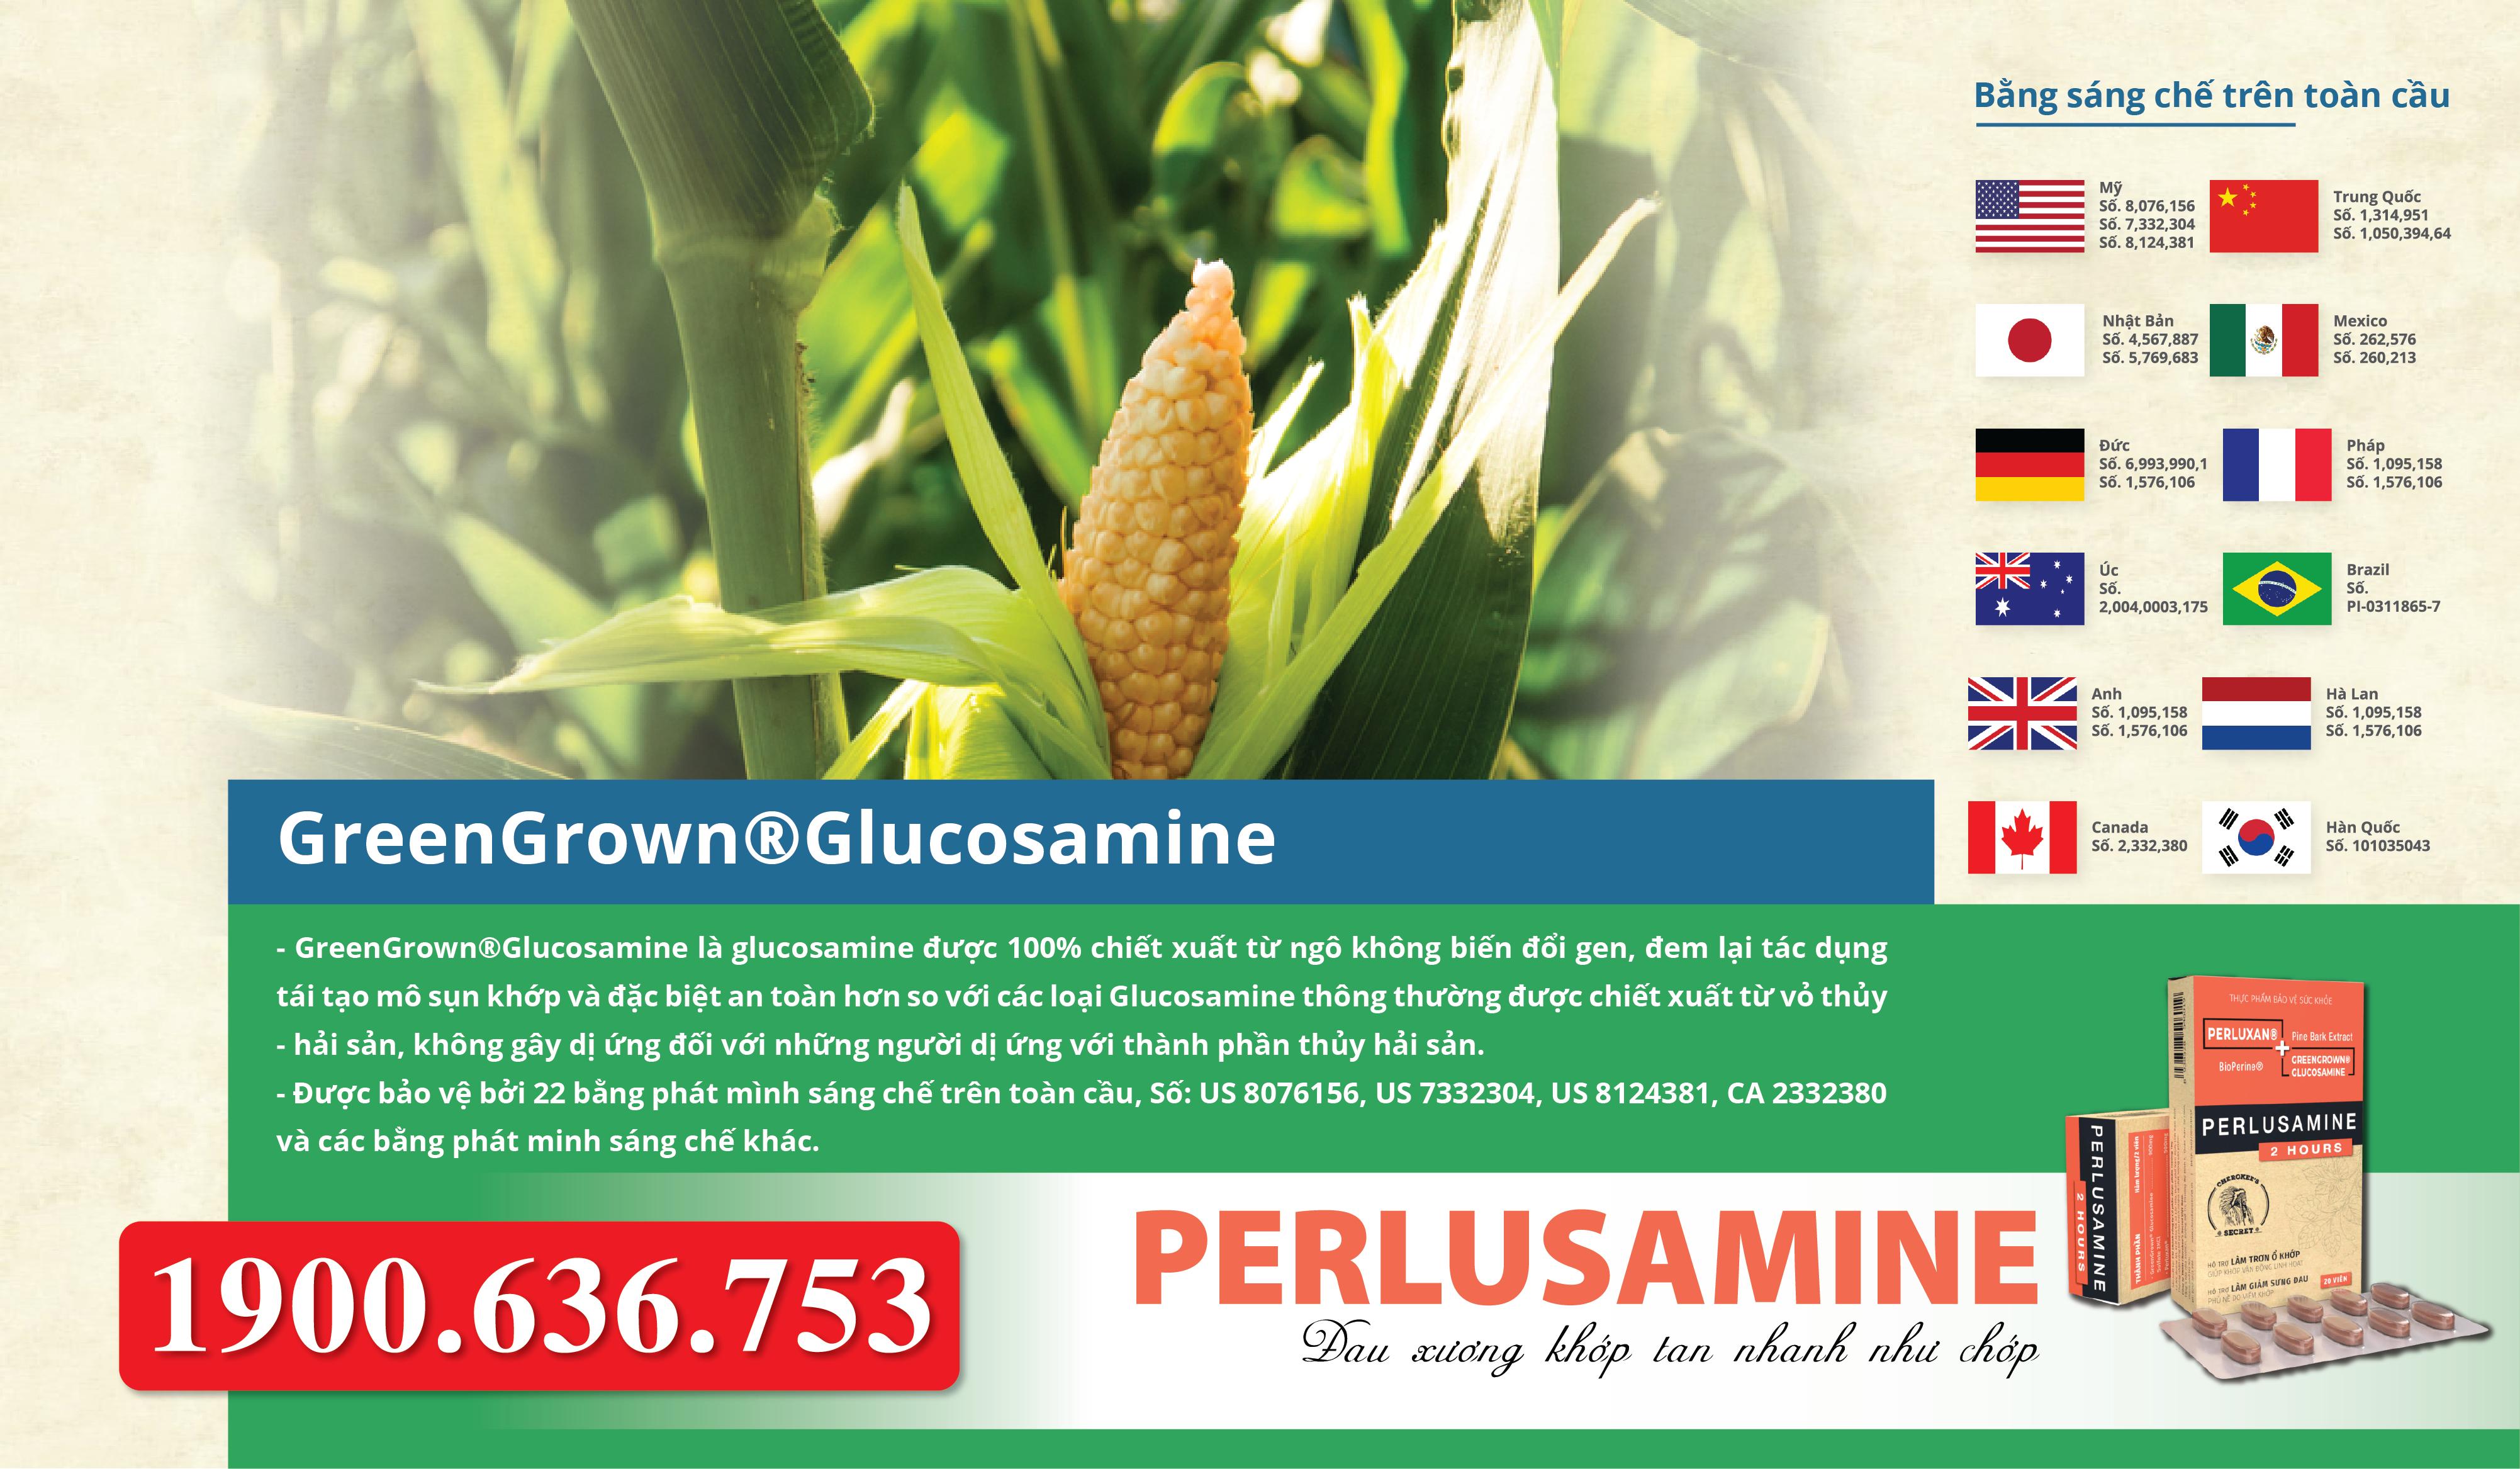 Greengrown Glucosamine – Làm chậm quá trình thoái hóa khớp